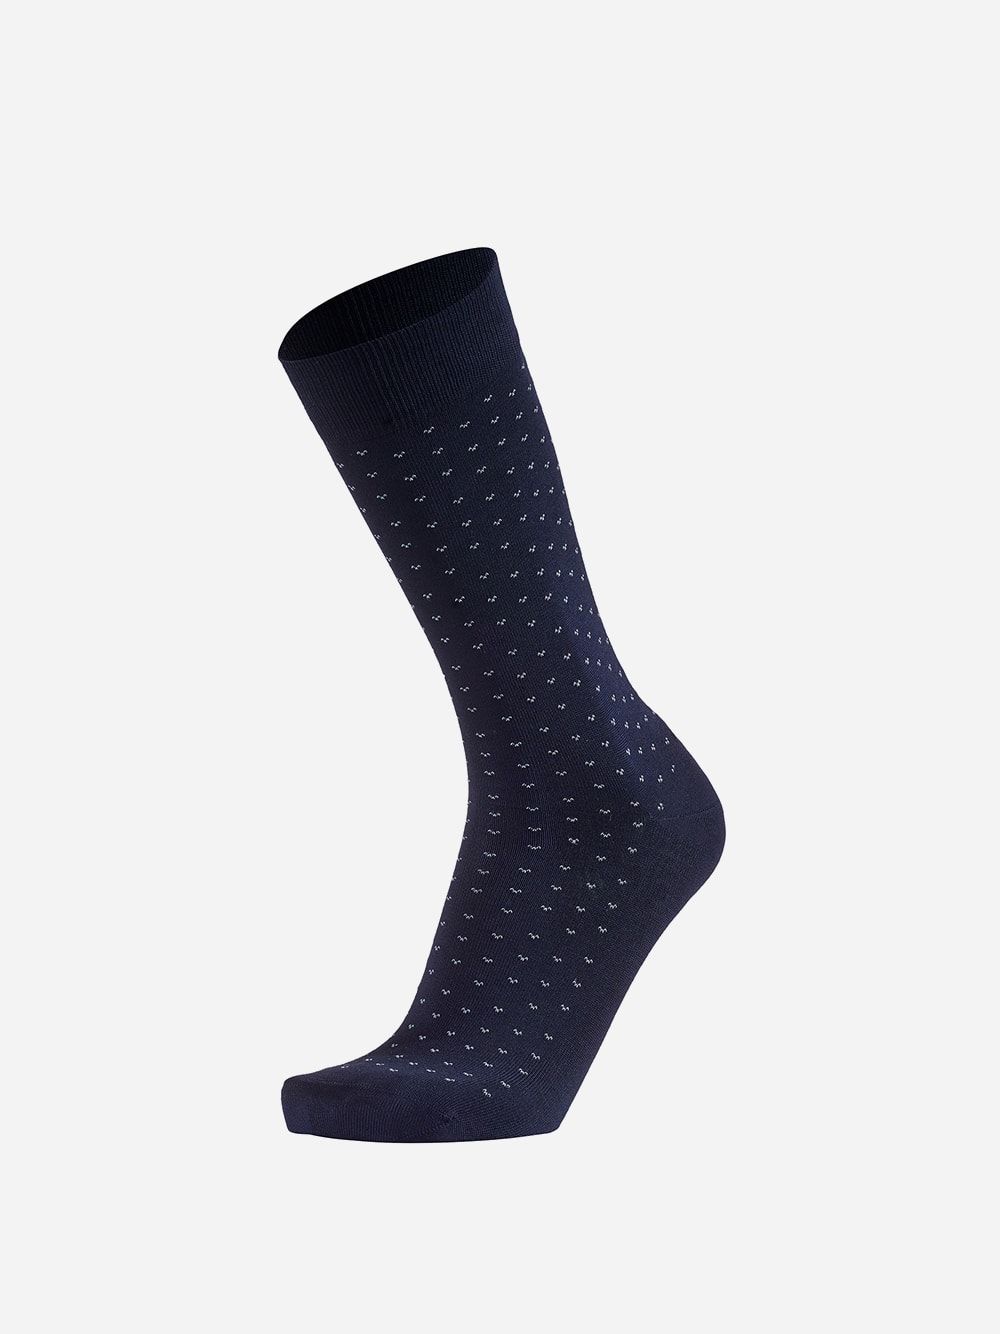 Blue Socks Vintage | Westmister